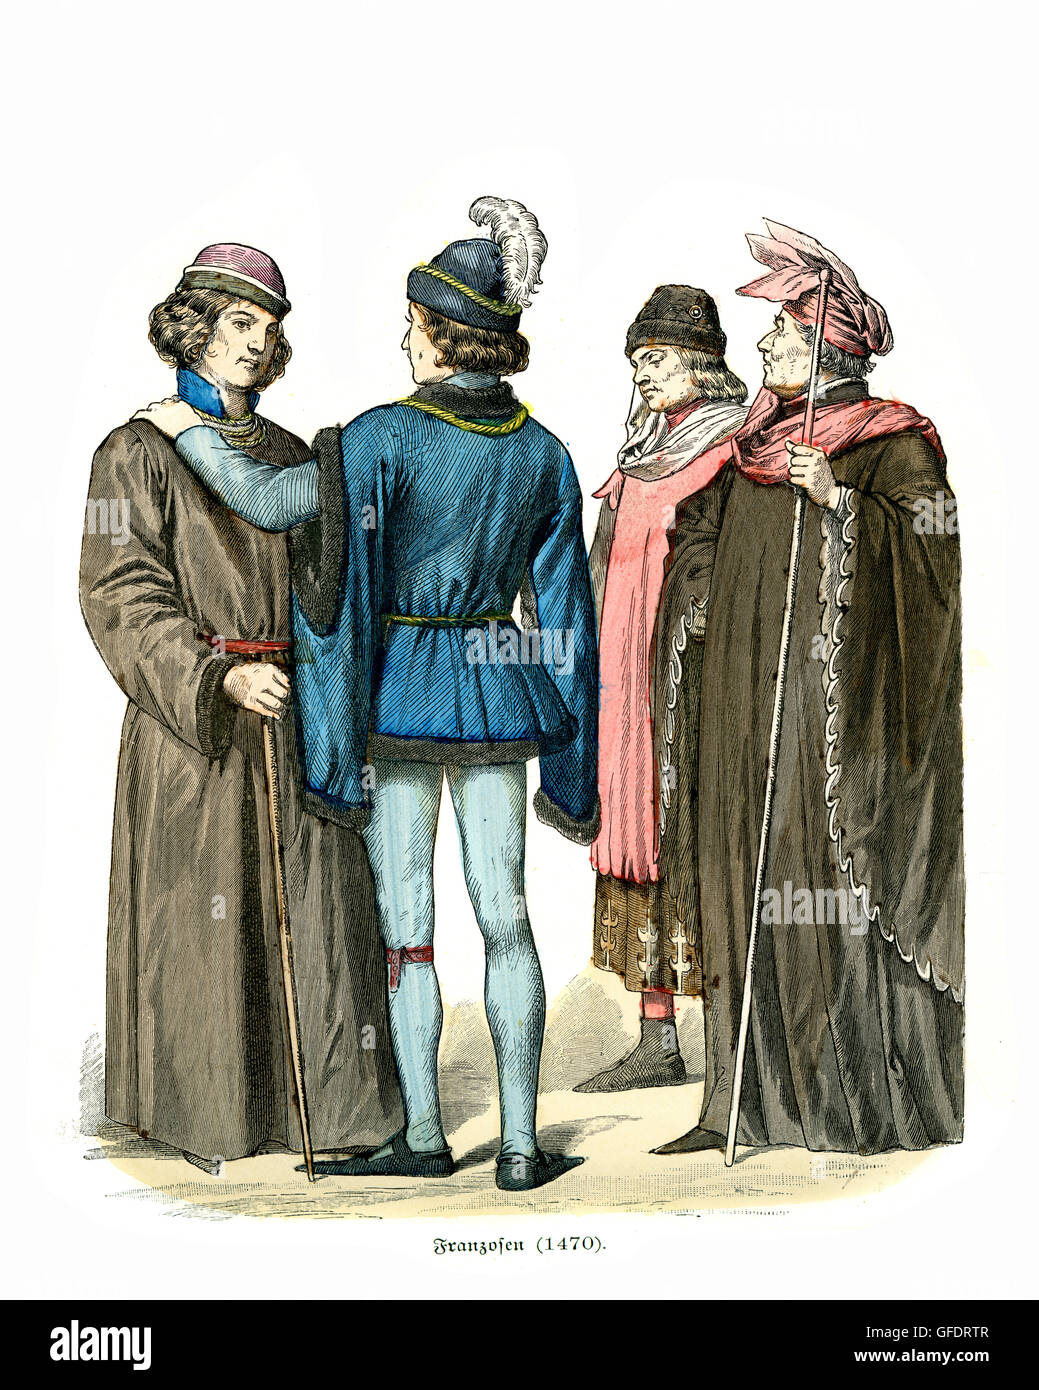 Mens mode de la France médiévale 15e siècle Banque D'Images